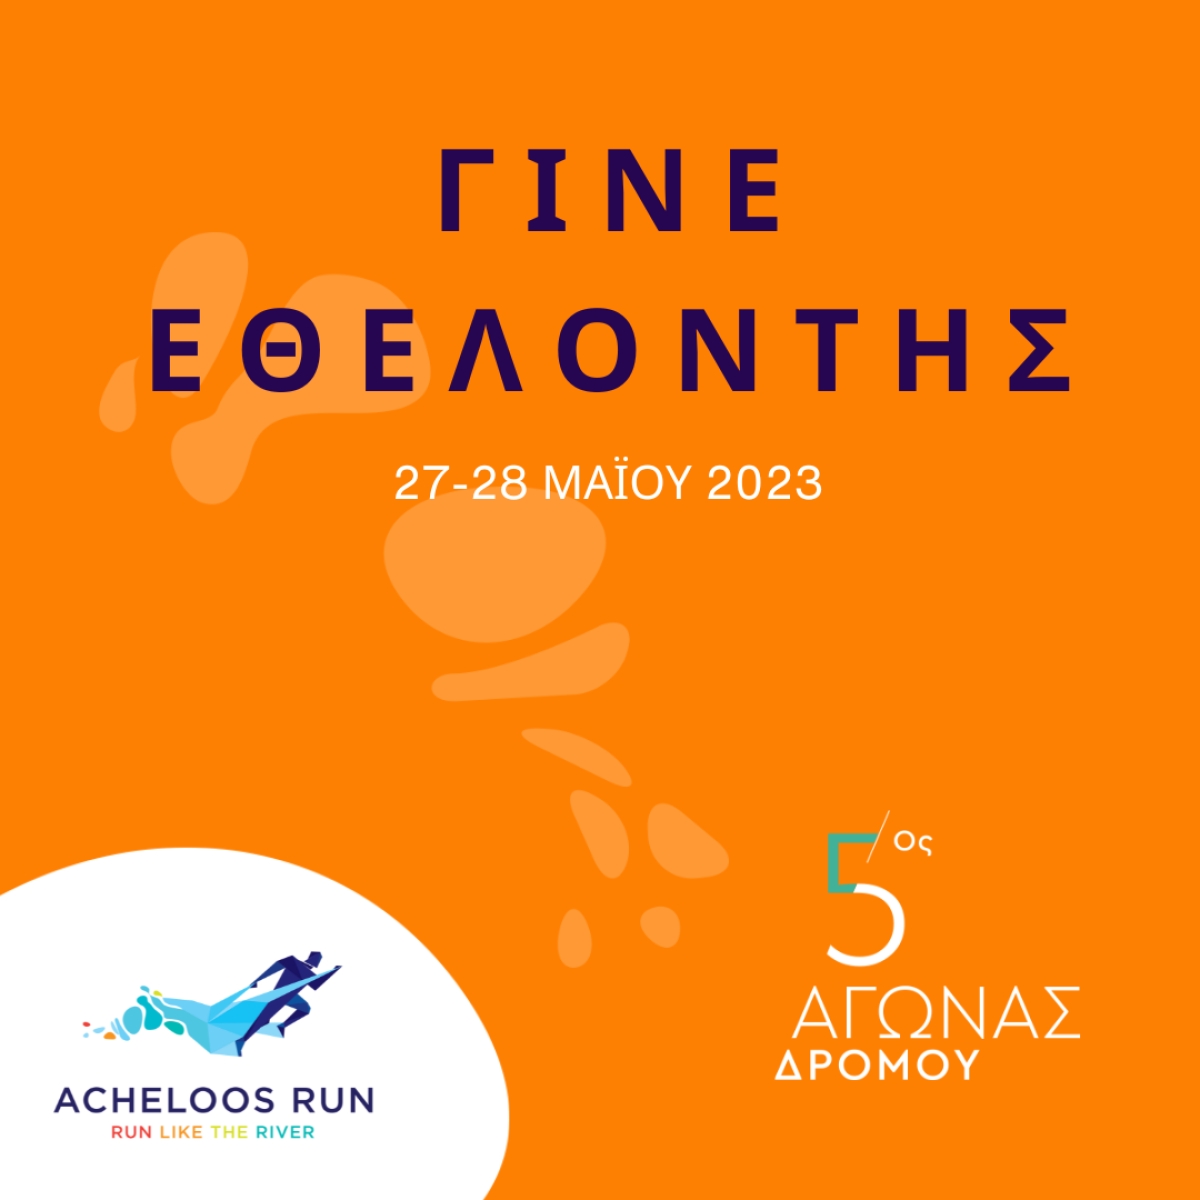 Γίνε εθελοντής στο 5ο Acheloos Run 2023!  Πάρε μέρος στη μεγαλύτερη αθλητική διοργάνωση της περιοχής!